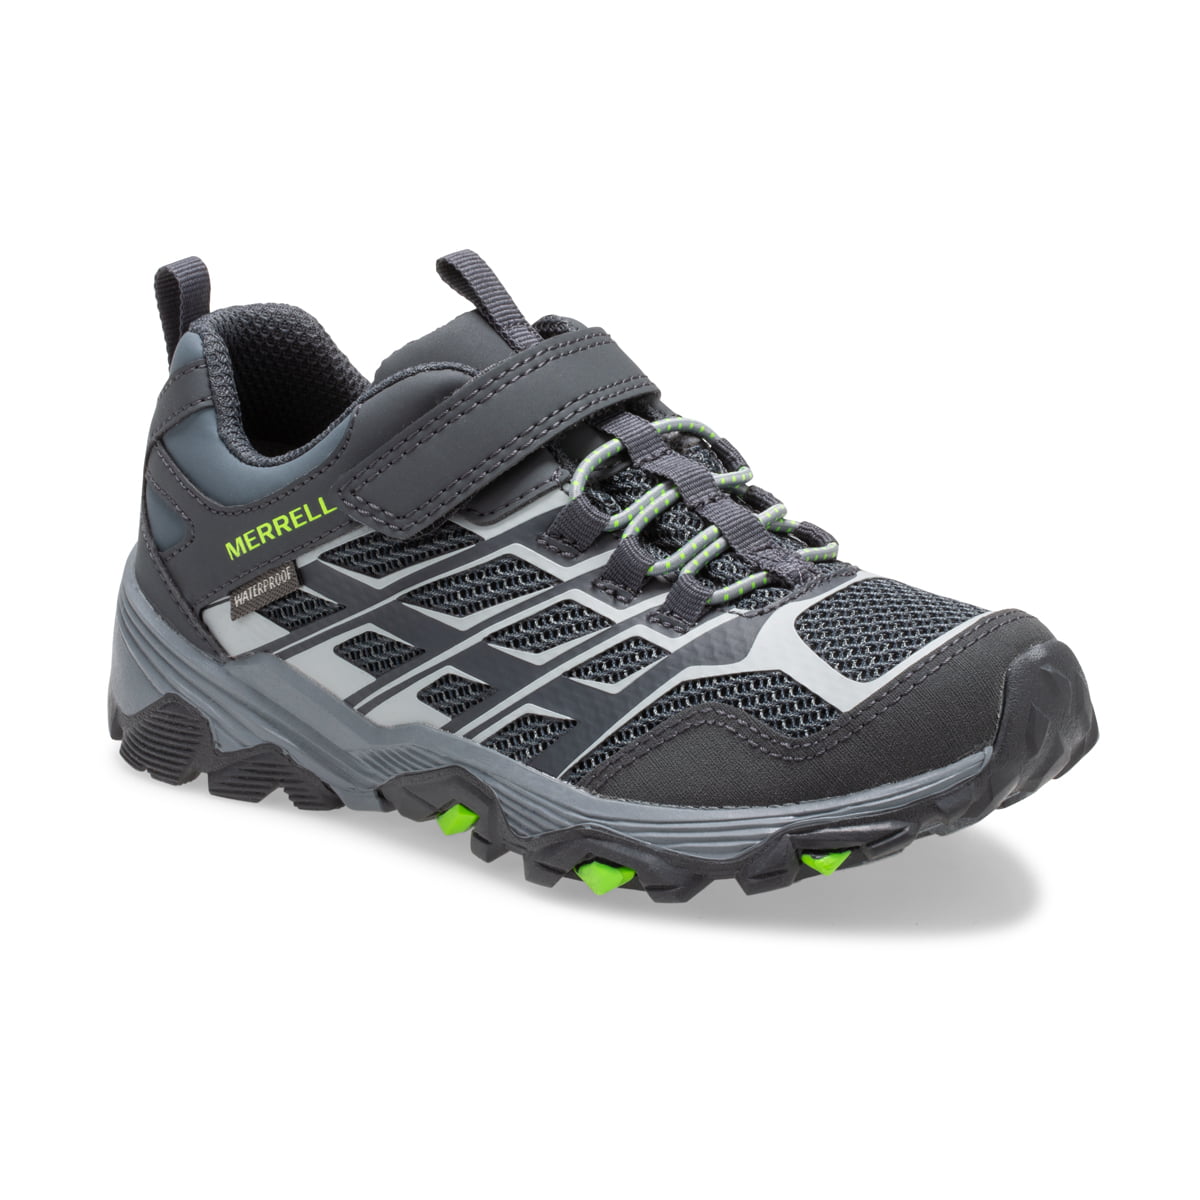 Merrell Boys MOAB FST Low A/C Waterproof Walking Shoes Black Sports Outdoors 